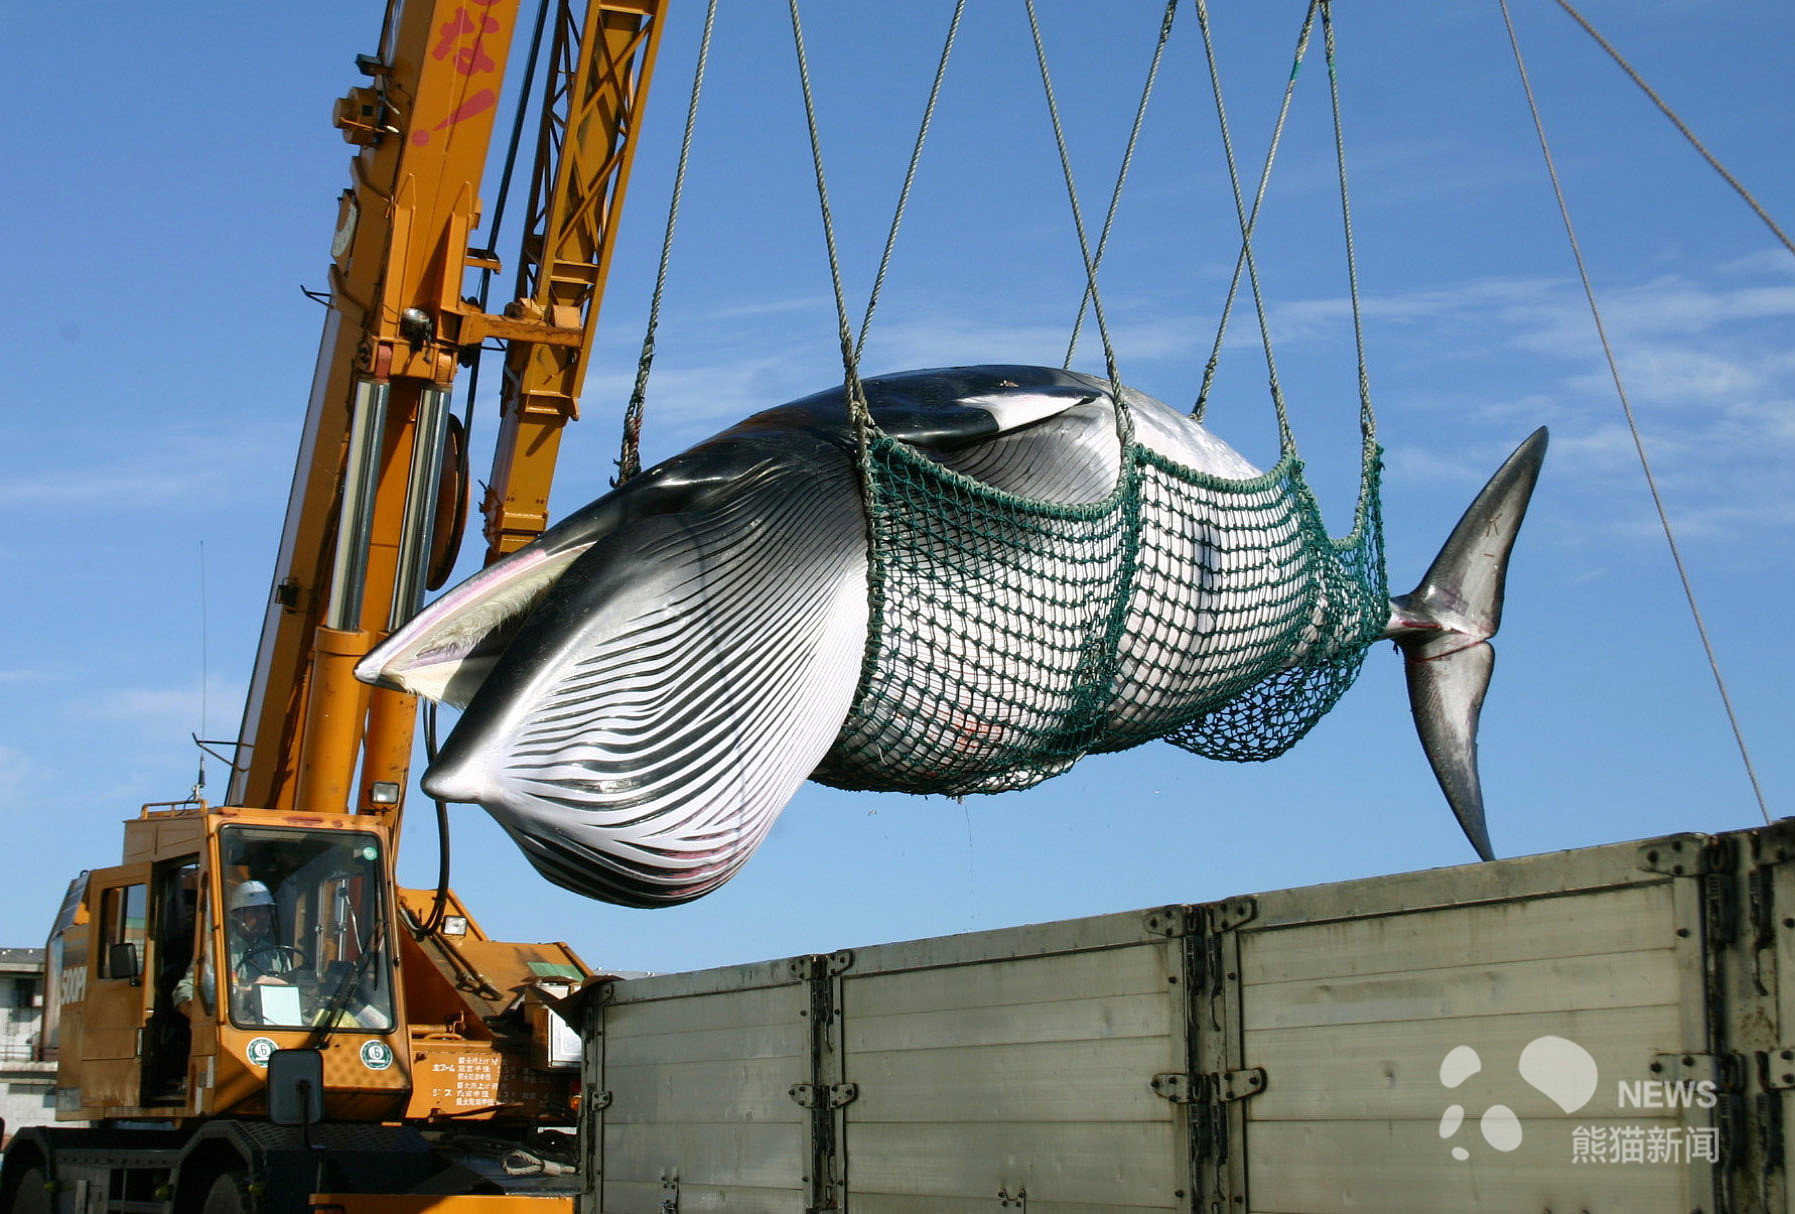 又见海豚湾?日本7月1日重启商业捕鲸活动